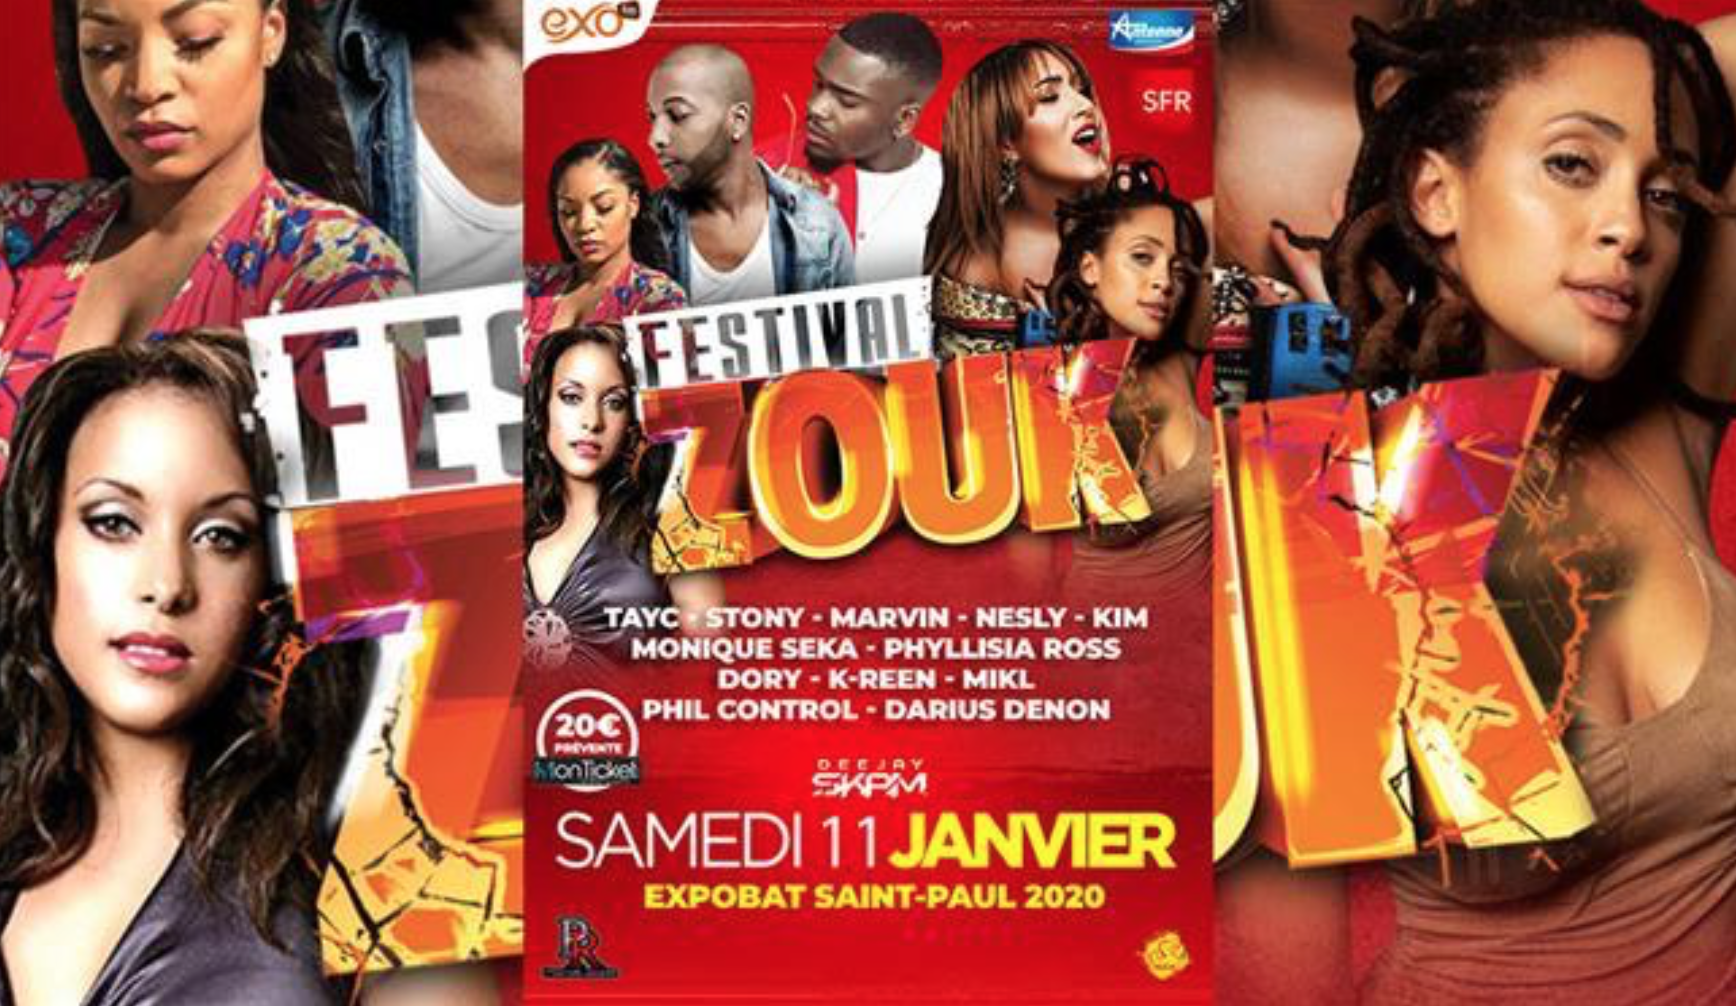 Festival Zouk samedi 11 janvier à Saint-Paul: à ne pas manquer!